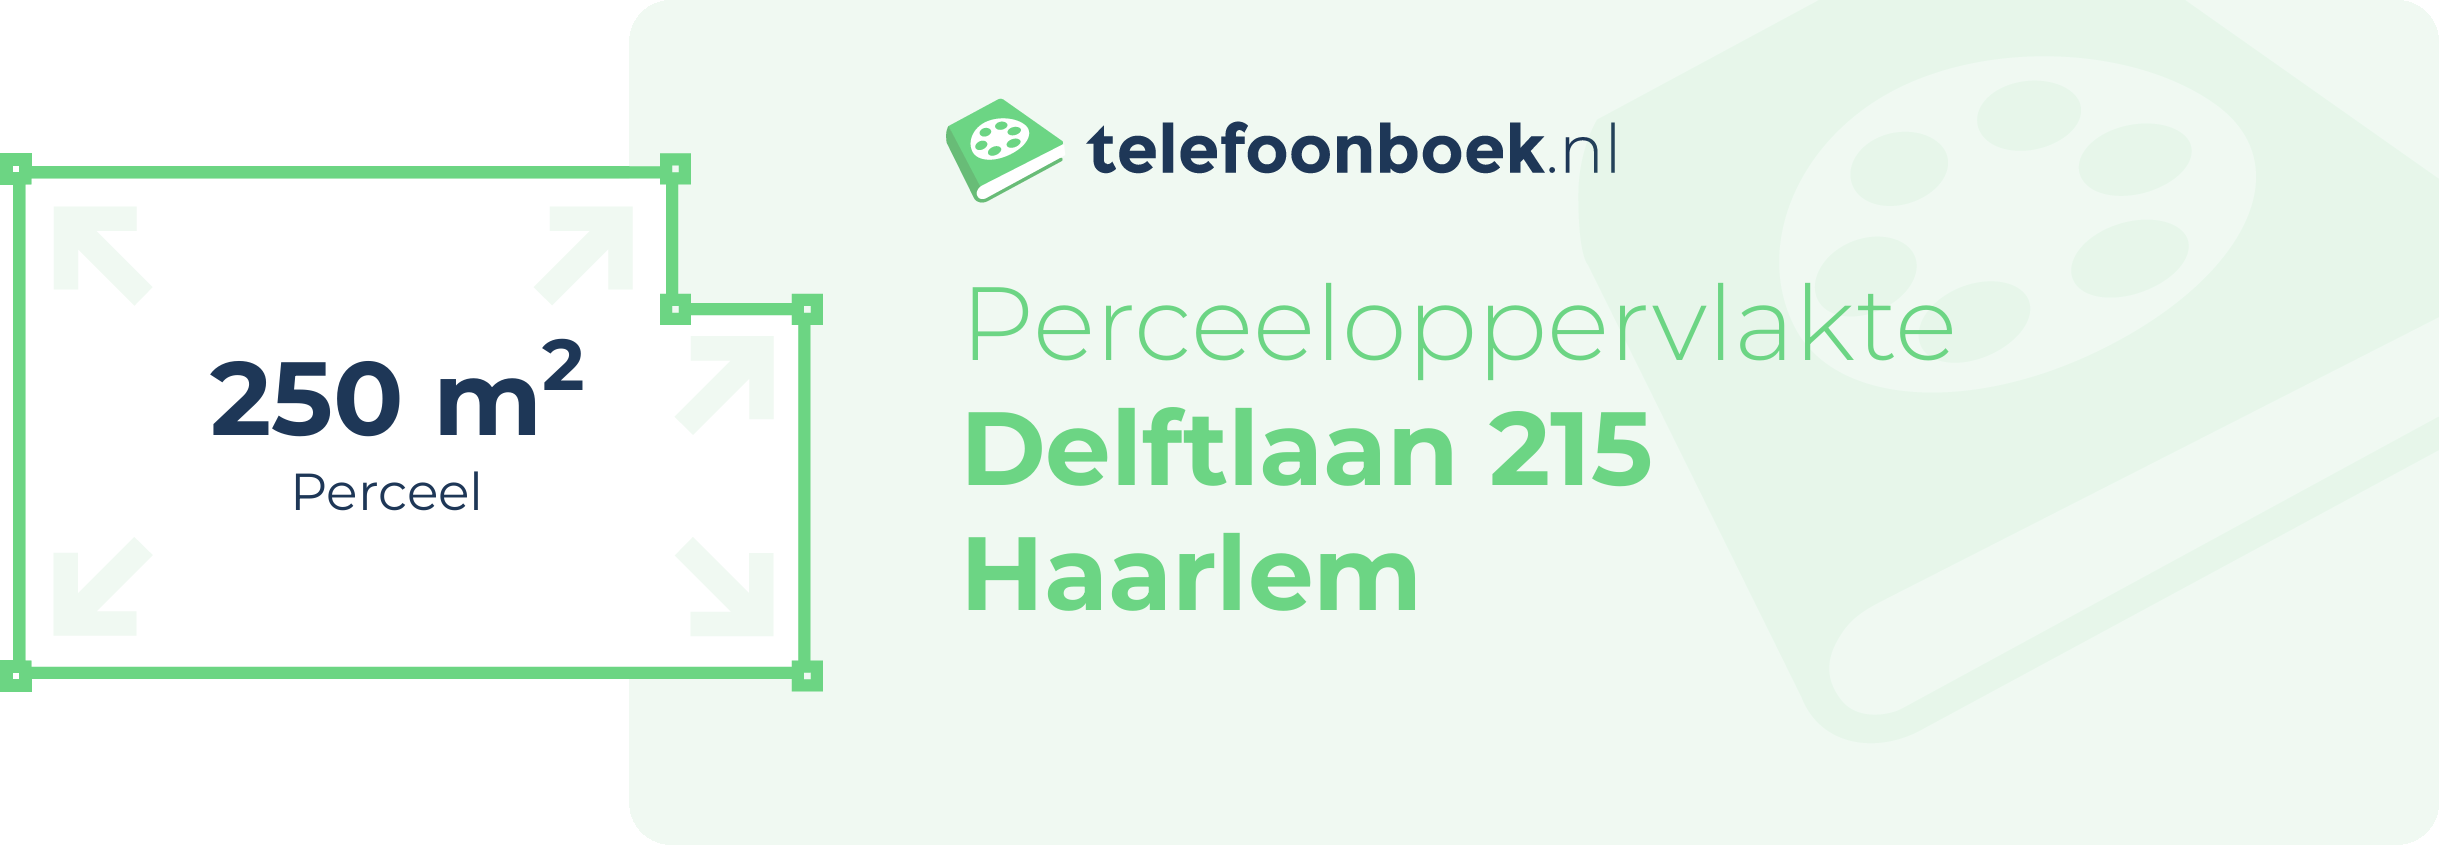 Perceeloppervlakte Delftlaan 215 Haarlem